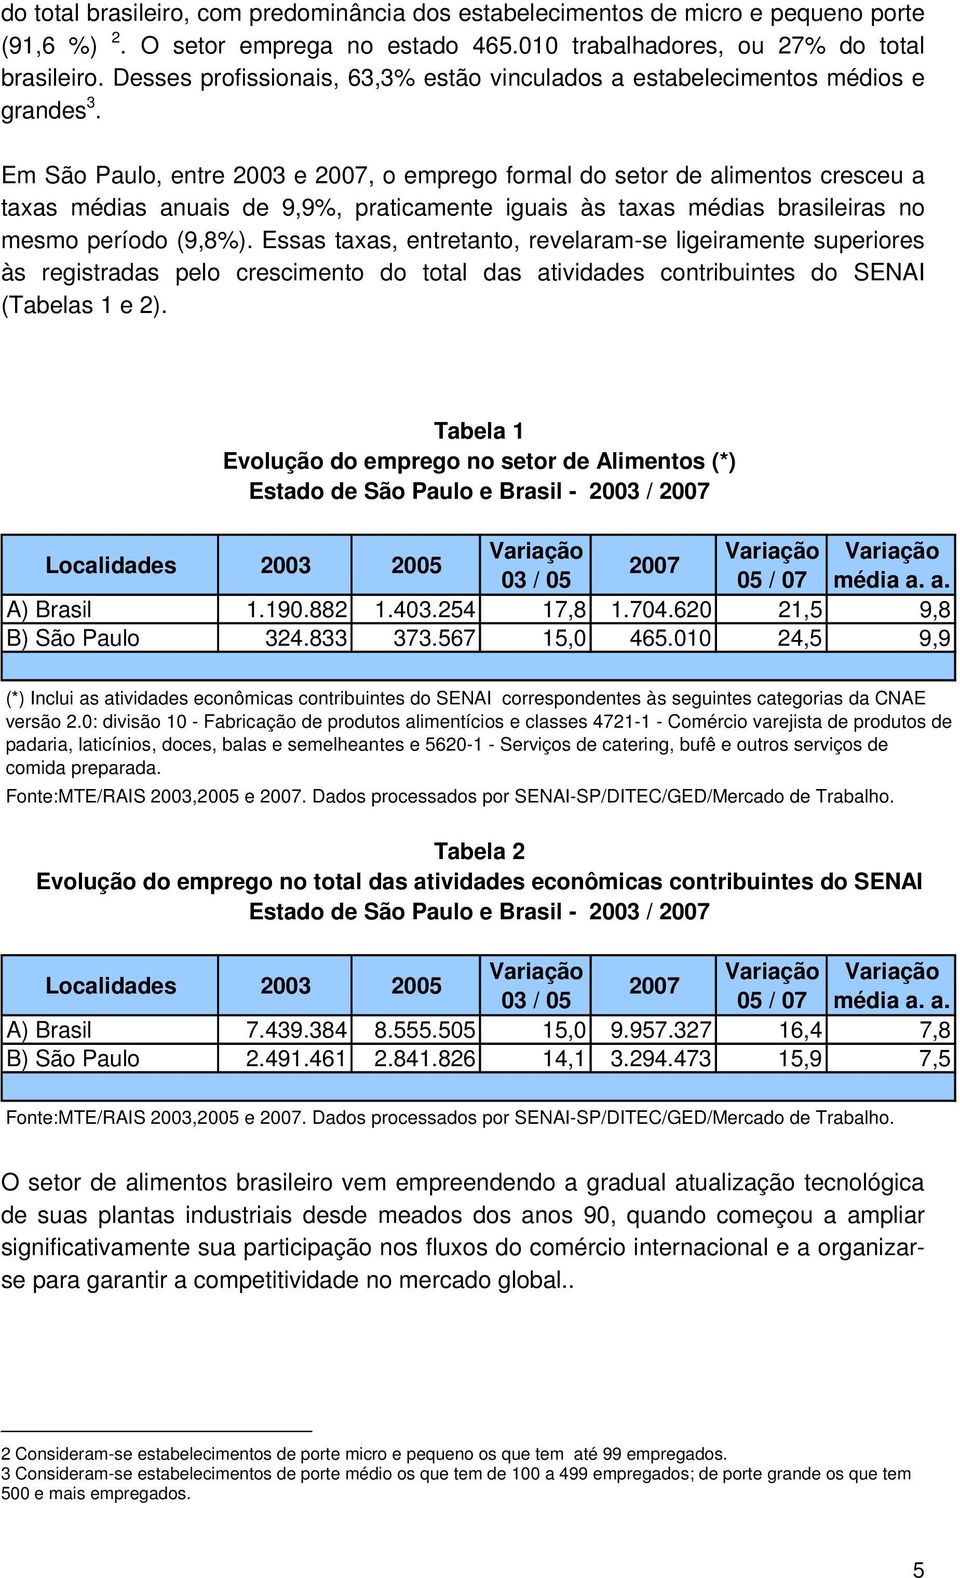 Em São Paulo, entre 2003 e 2007, o emprego formal do setor de alimentos cresceu a taxas médias anuais de 9,9%, praticamente iguais às taxas médias brasileiras no mesmo período (9,8%).